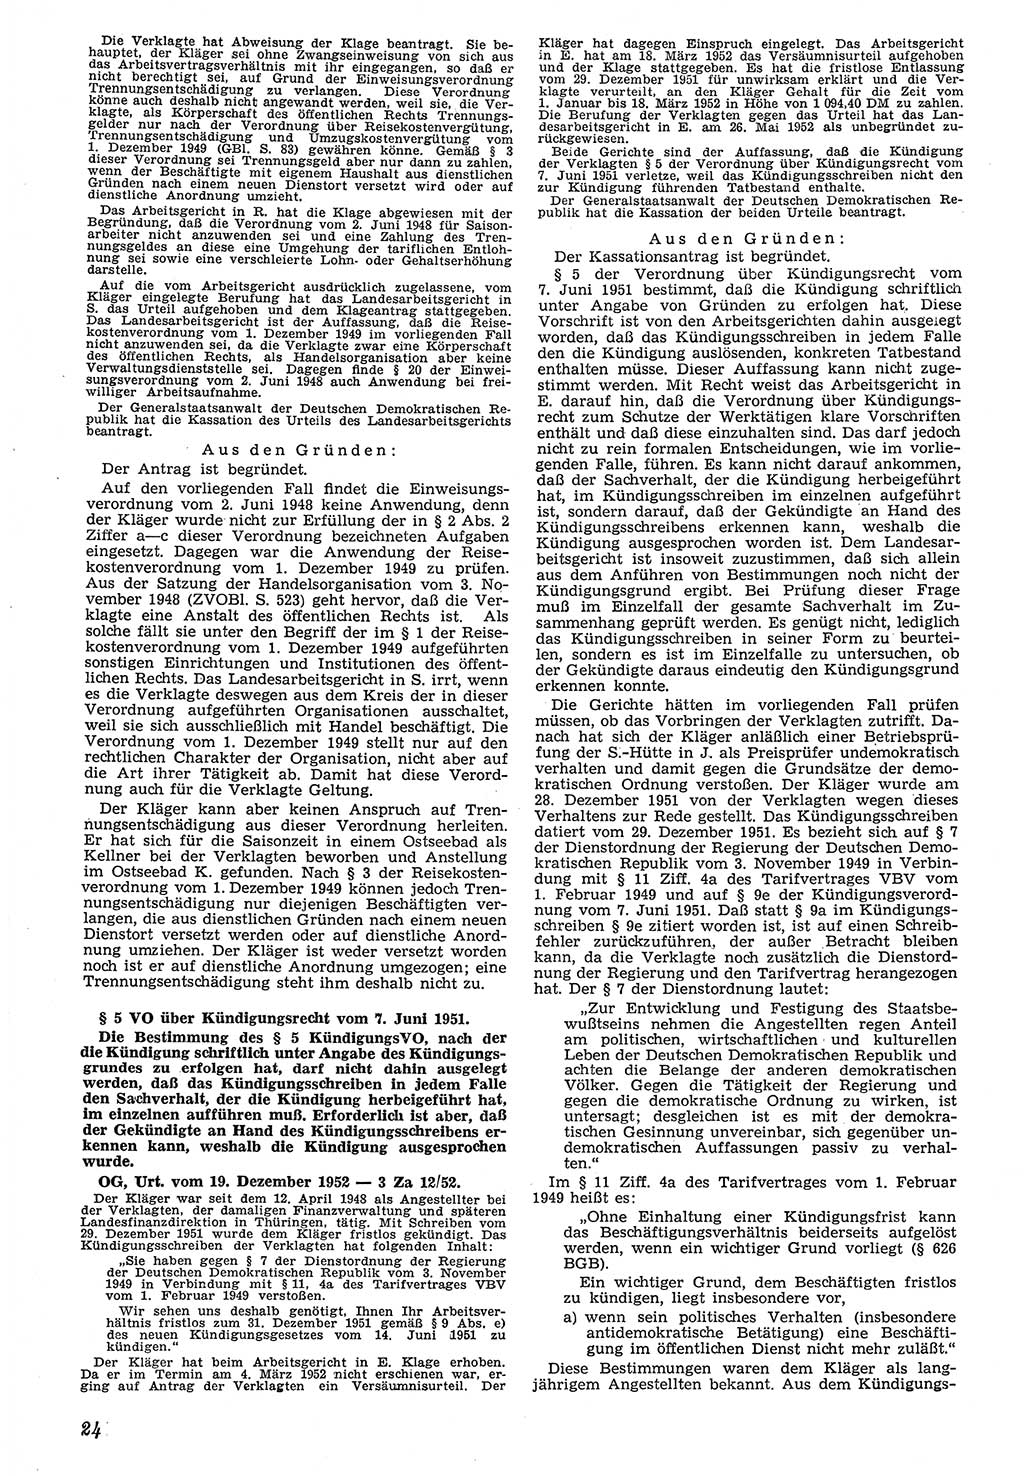 Neue Justiz (NJ), Zeitschrift für Recht und Rechtswissenschaft [Deutsche Demokratische Republik (DDR)], 7. Jahrgang 1953, Seite 24 (NJ DDR 1953, S. 24)